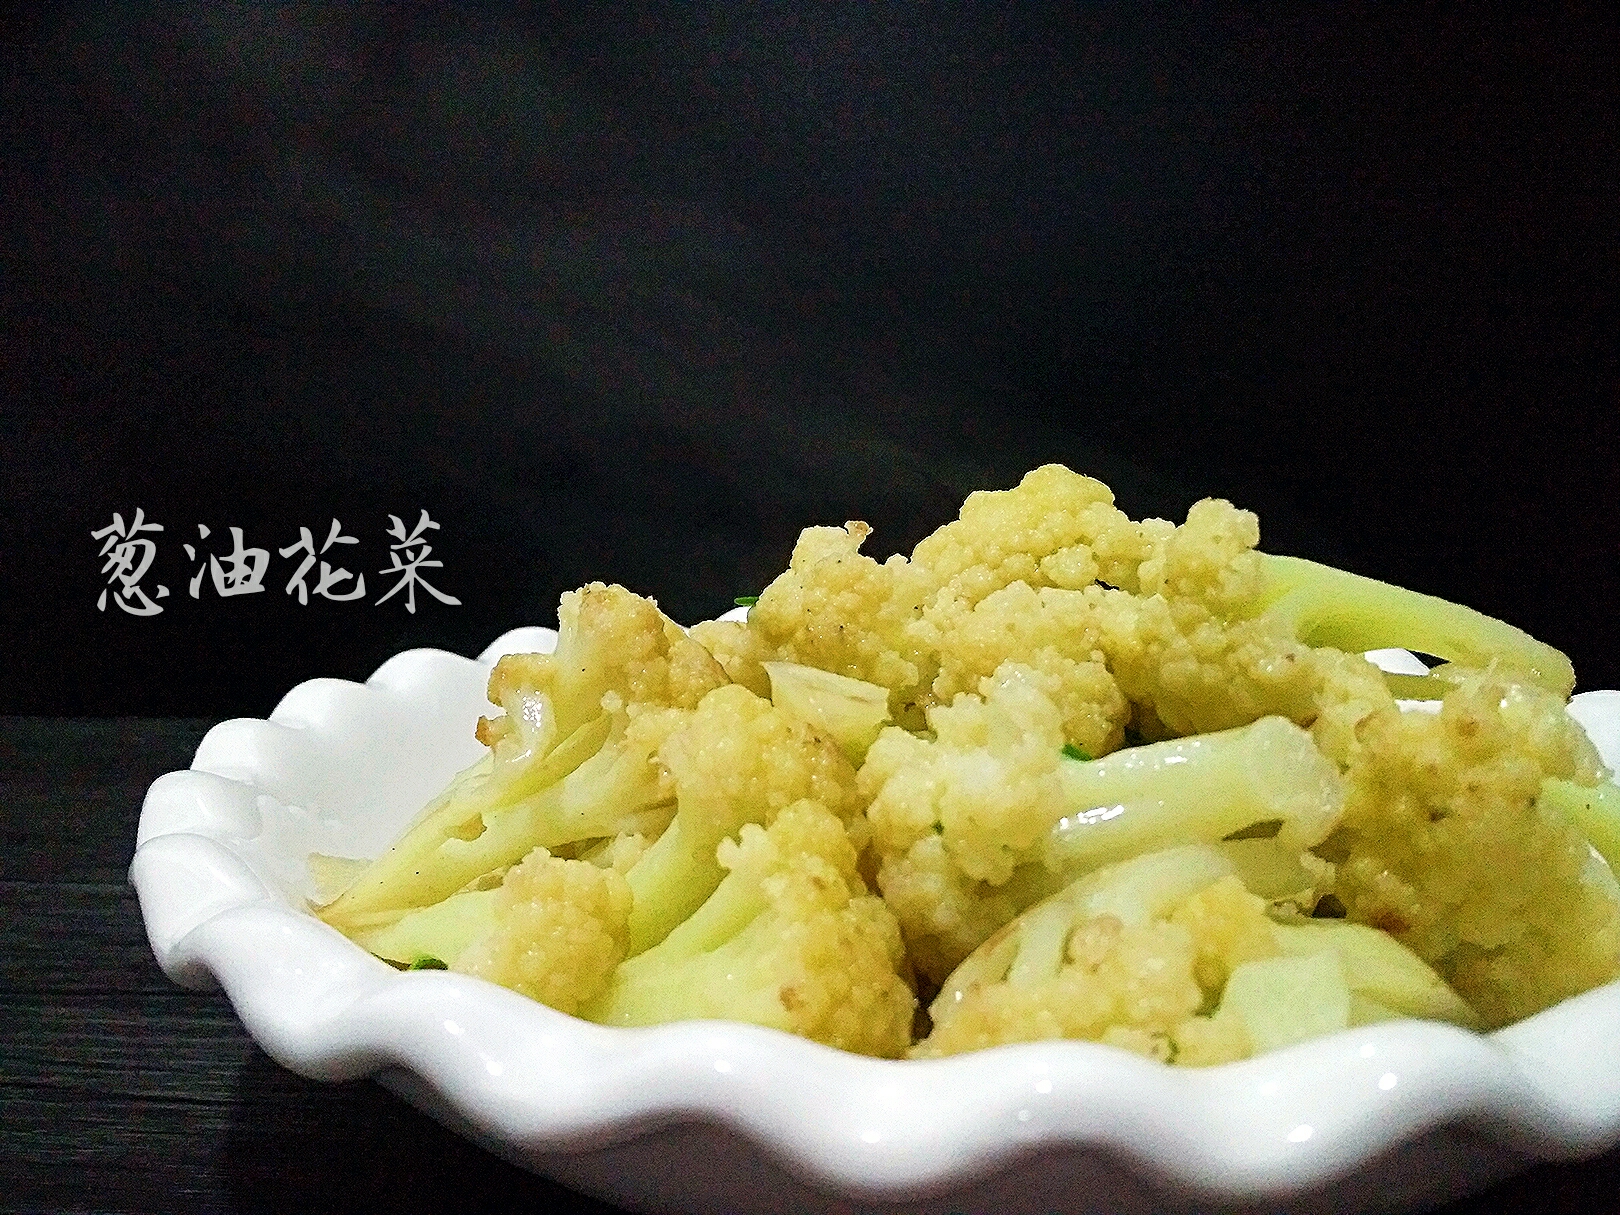 葱油花菜 中国菜 的做法步骤图 Jadehwang 下厨房